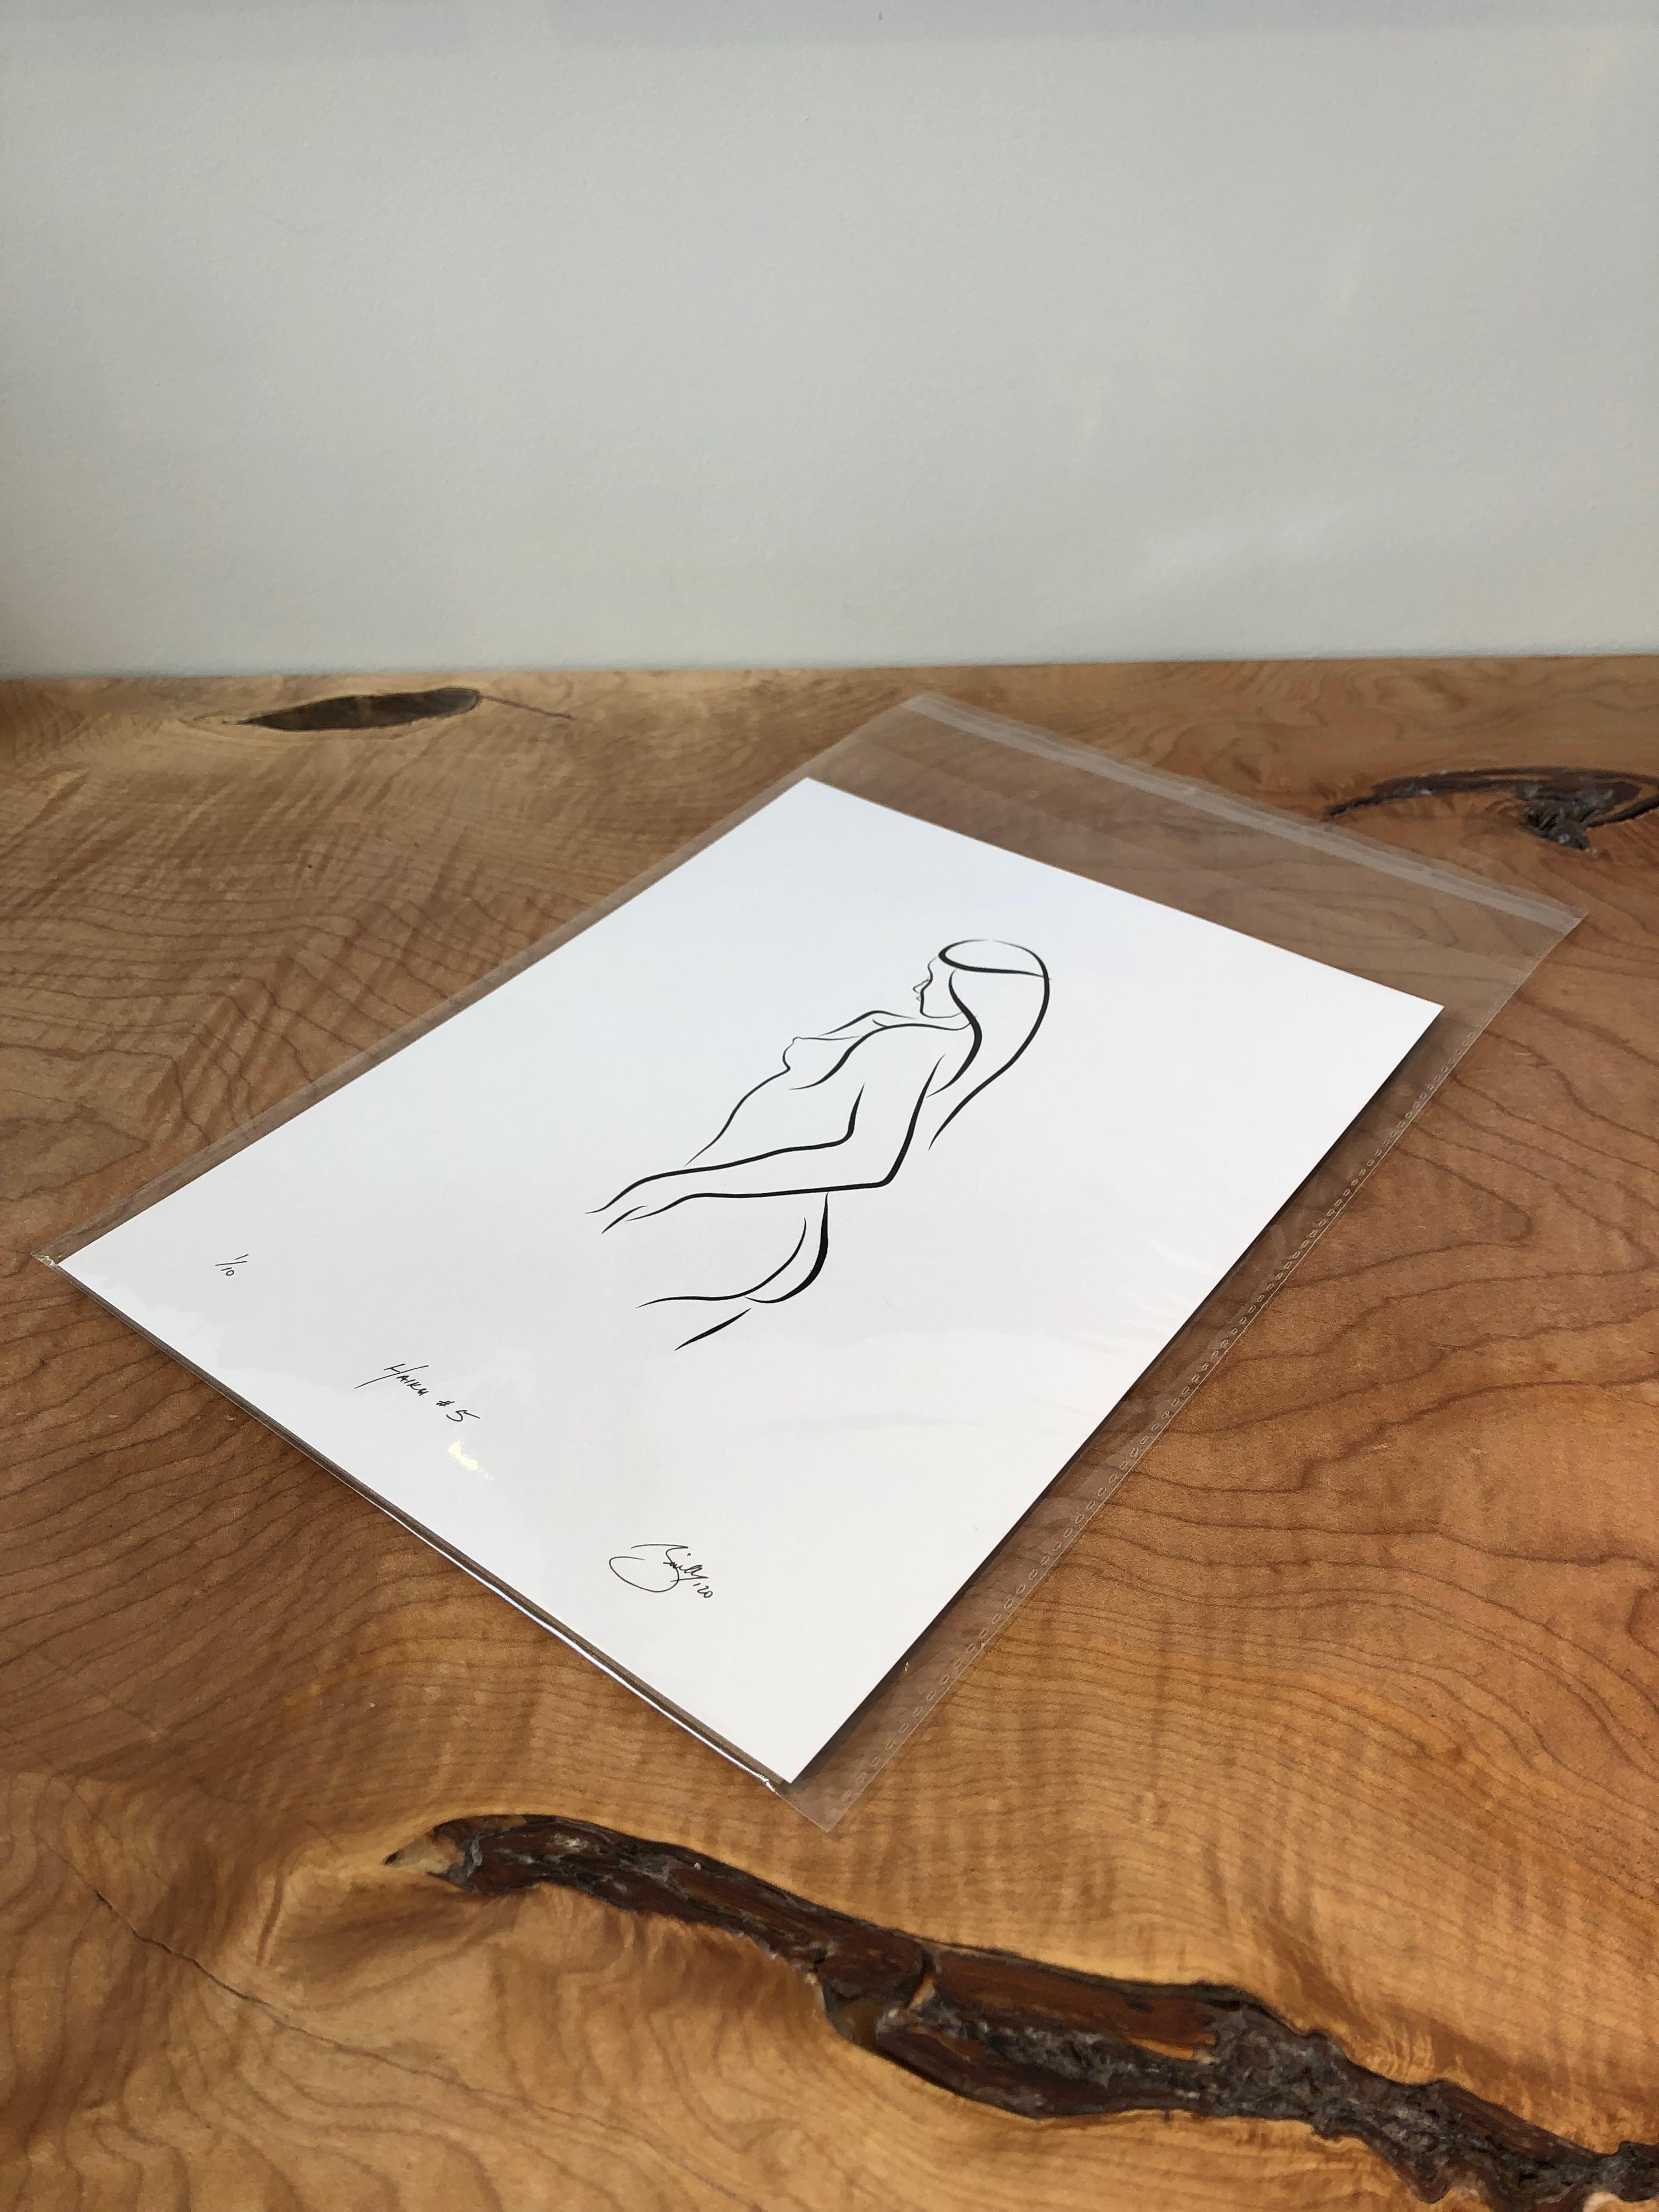 Haiku #5, 1/50 - Digital Vector Drawing Standing Female Nude Woman Figure from R - Print by Michael Binkley